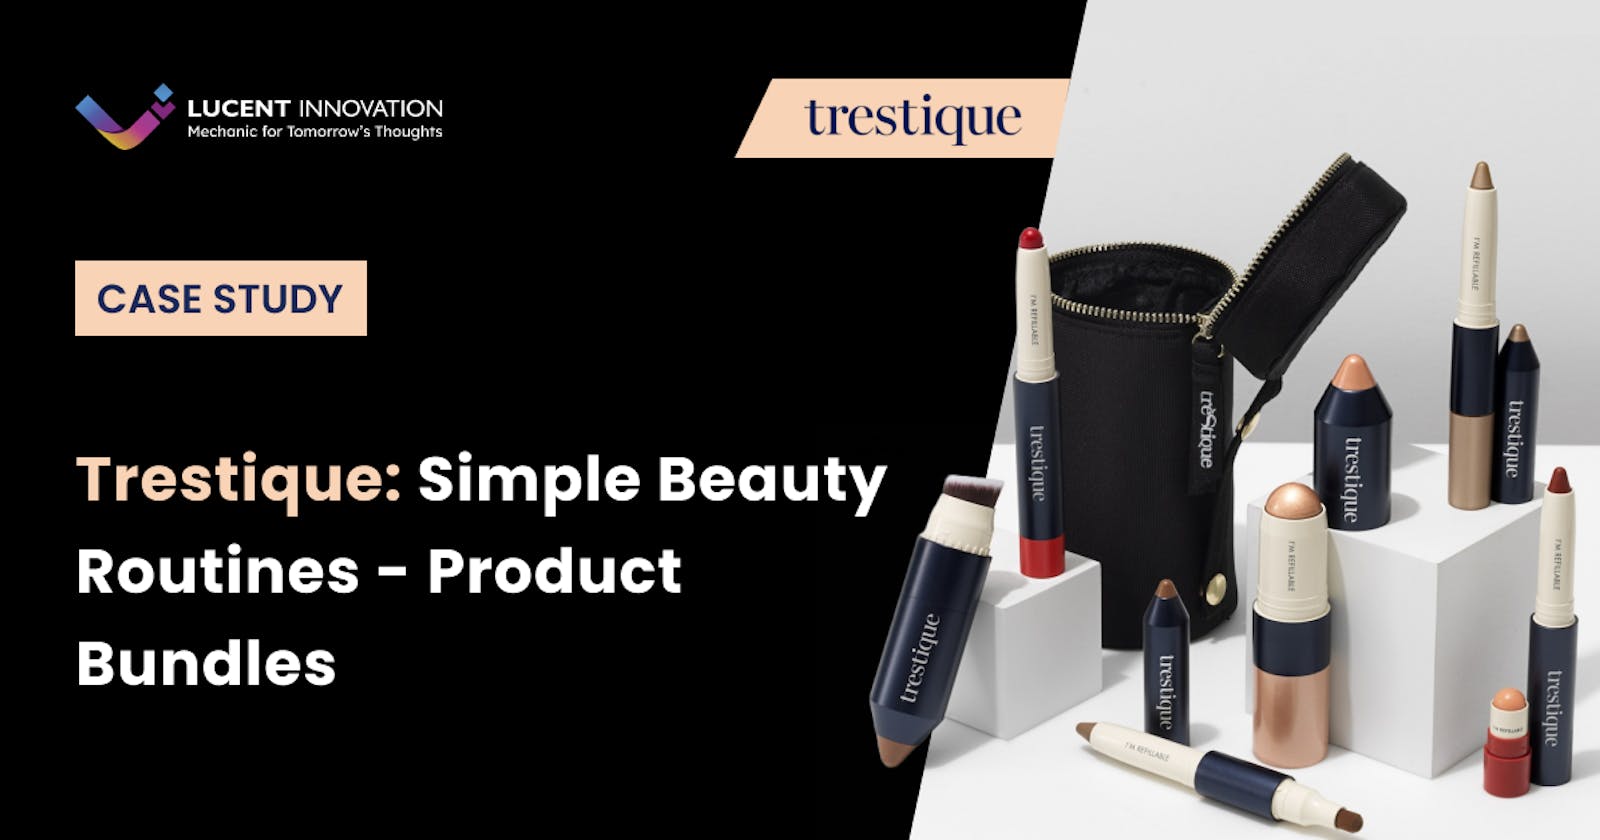 Trestique: Simple Beauty Routines - Product Bundles